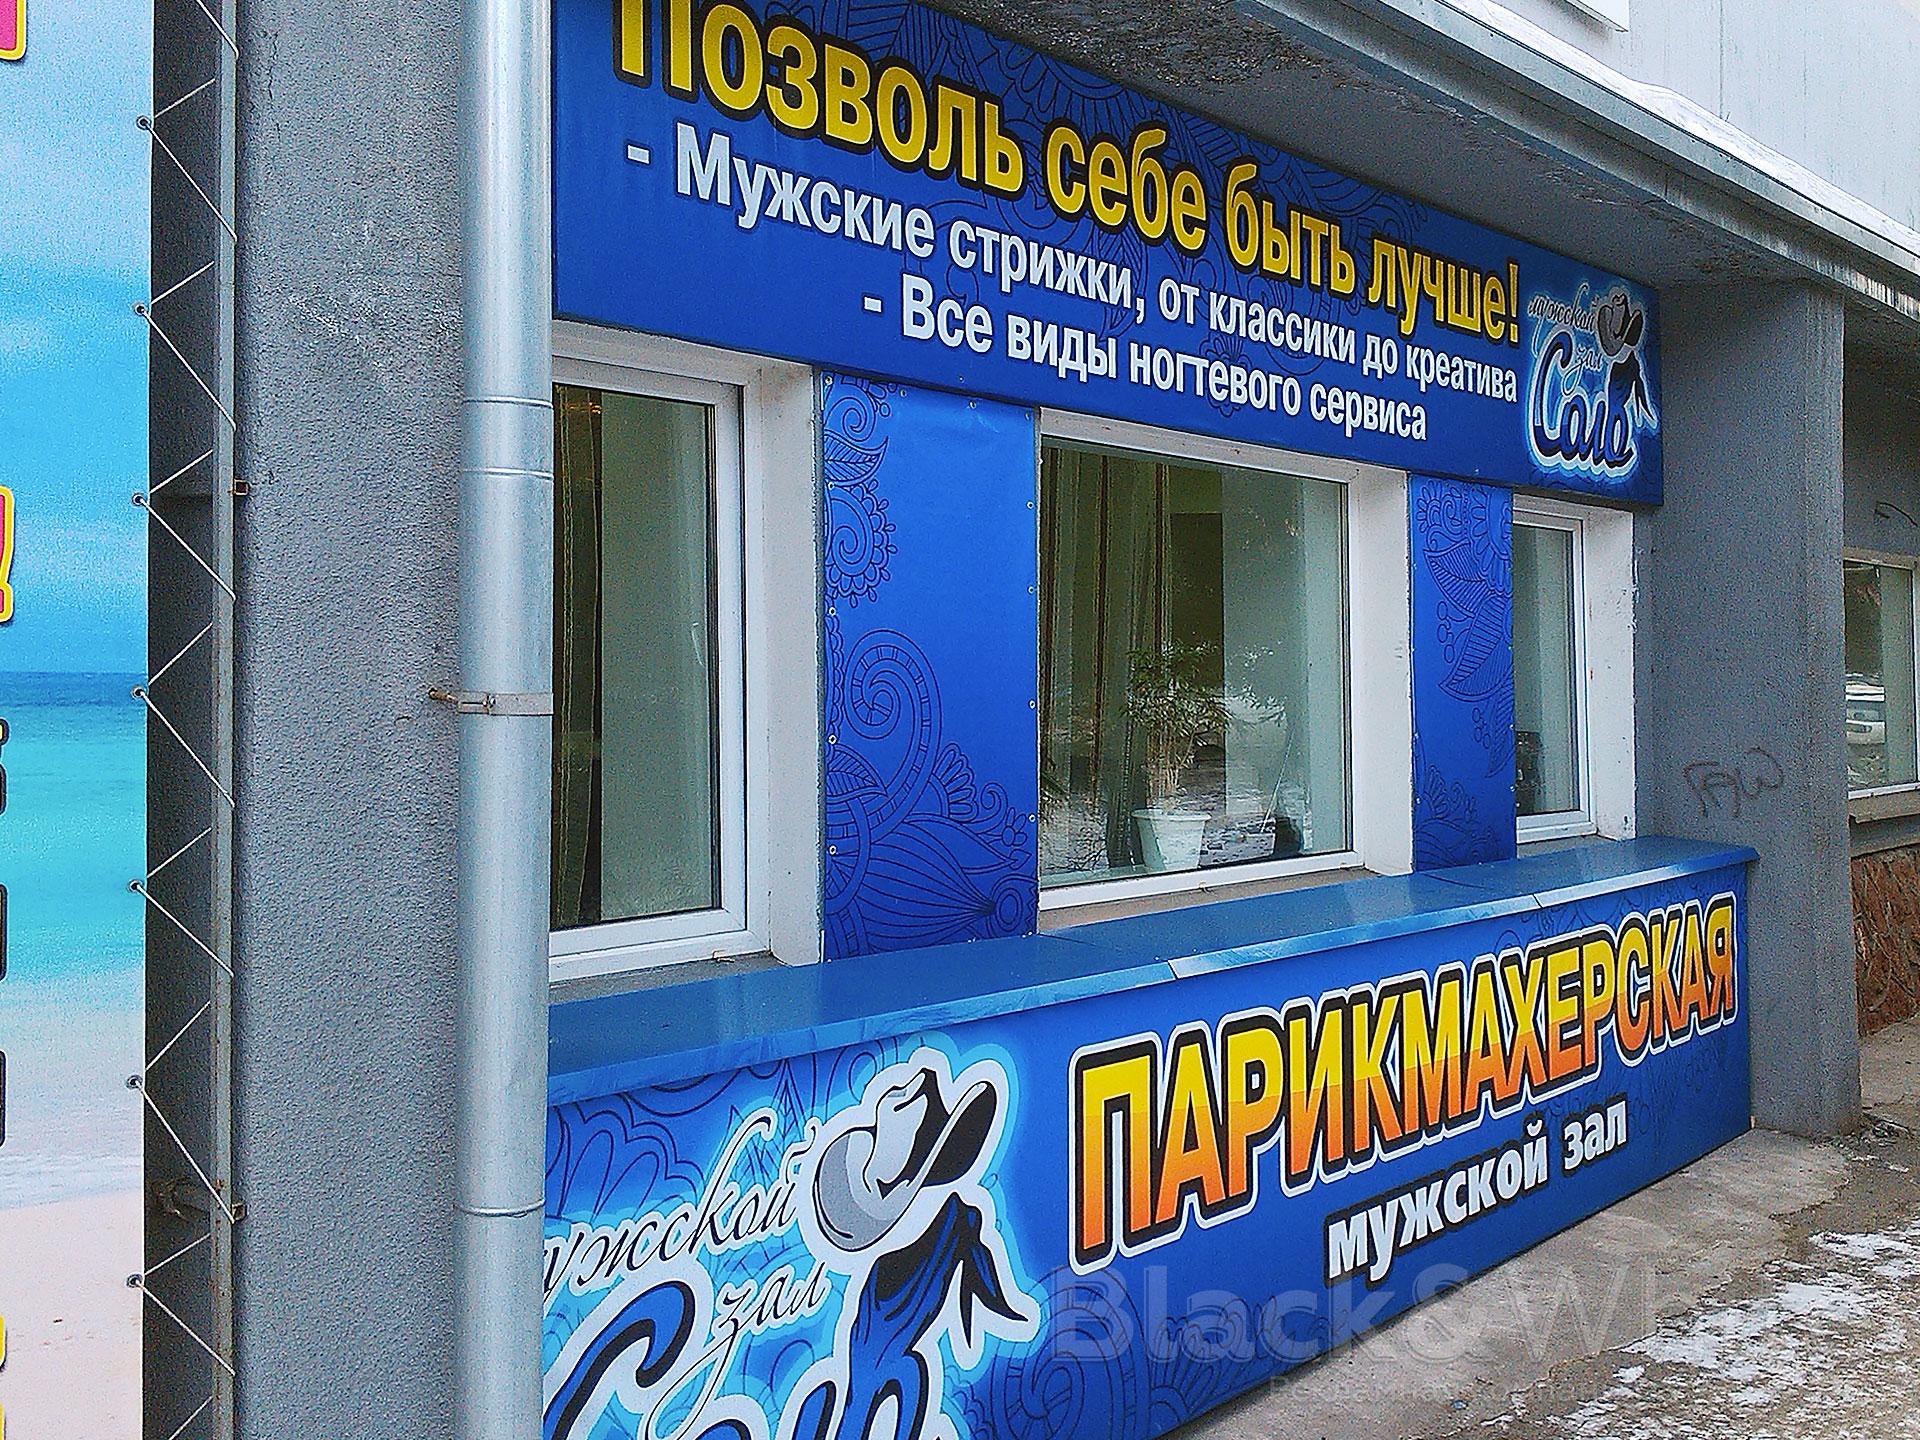 Печать-на-баннередля-парикмахерской-в-Красноярске.jpg